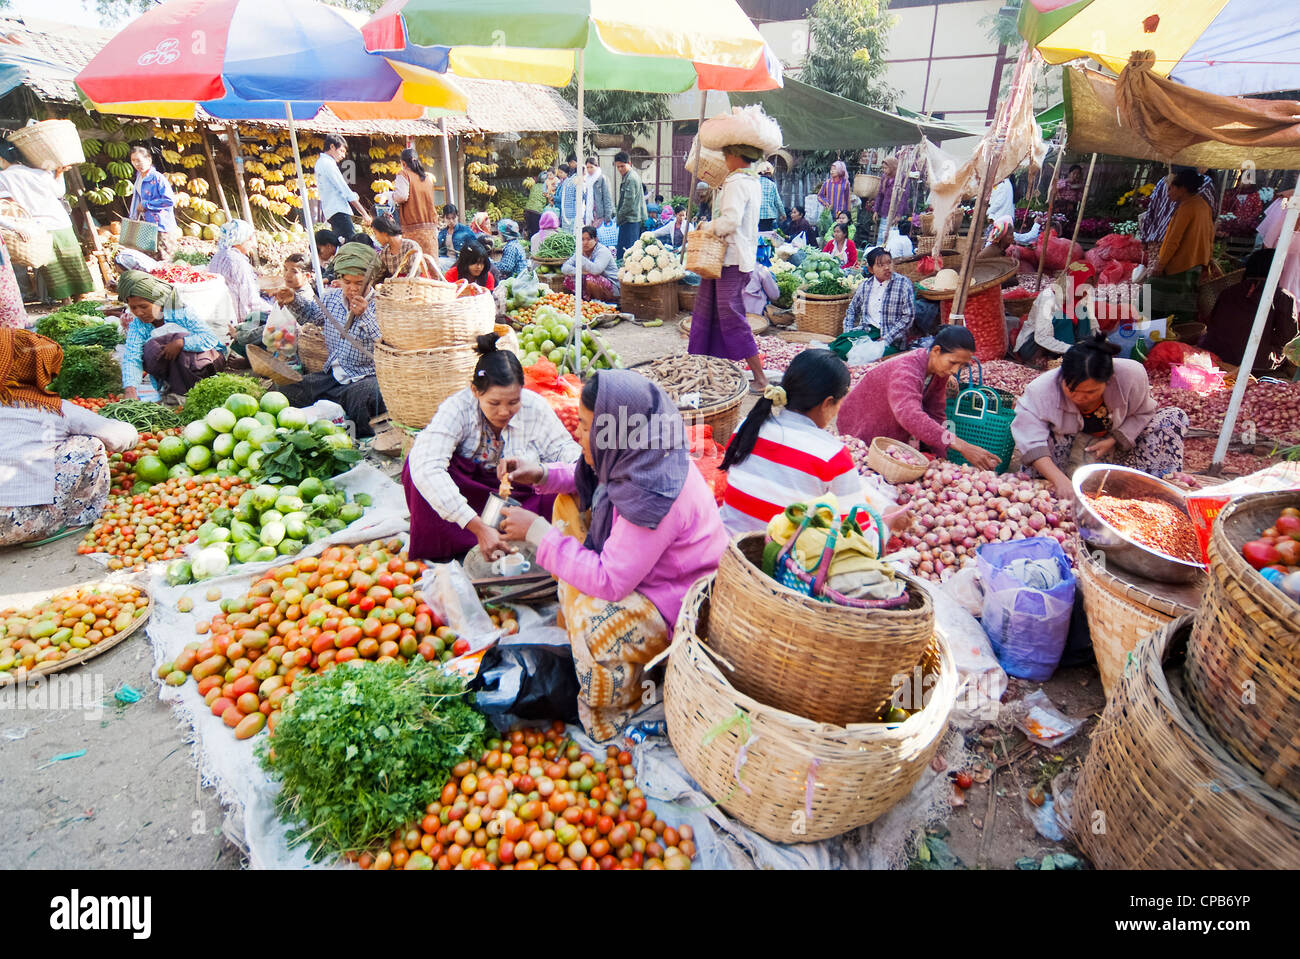 Nicht identifizierte Personen sind am Gemüse Stand auf dem Markt von Nyaung-U, Myanmar. Nyaung-U ist das Tor zur Stadt Bagan Stockfoto